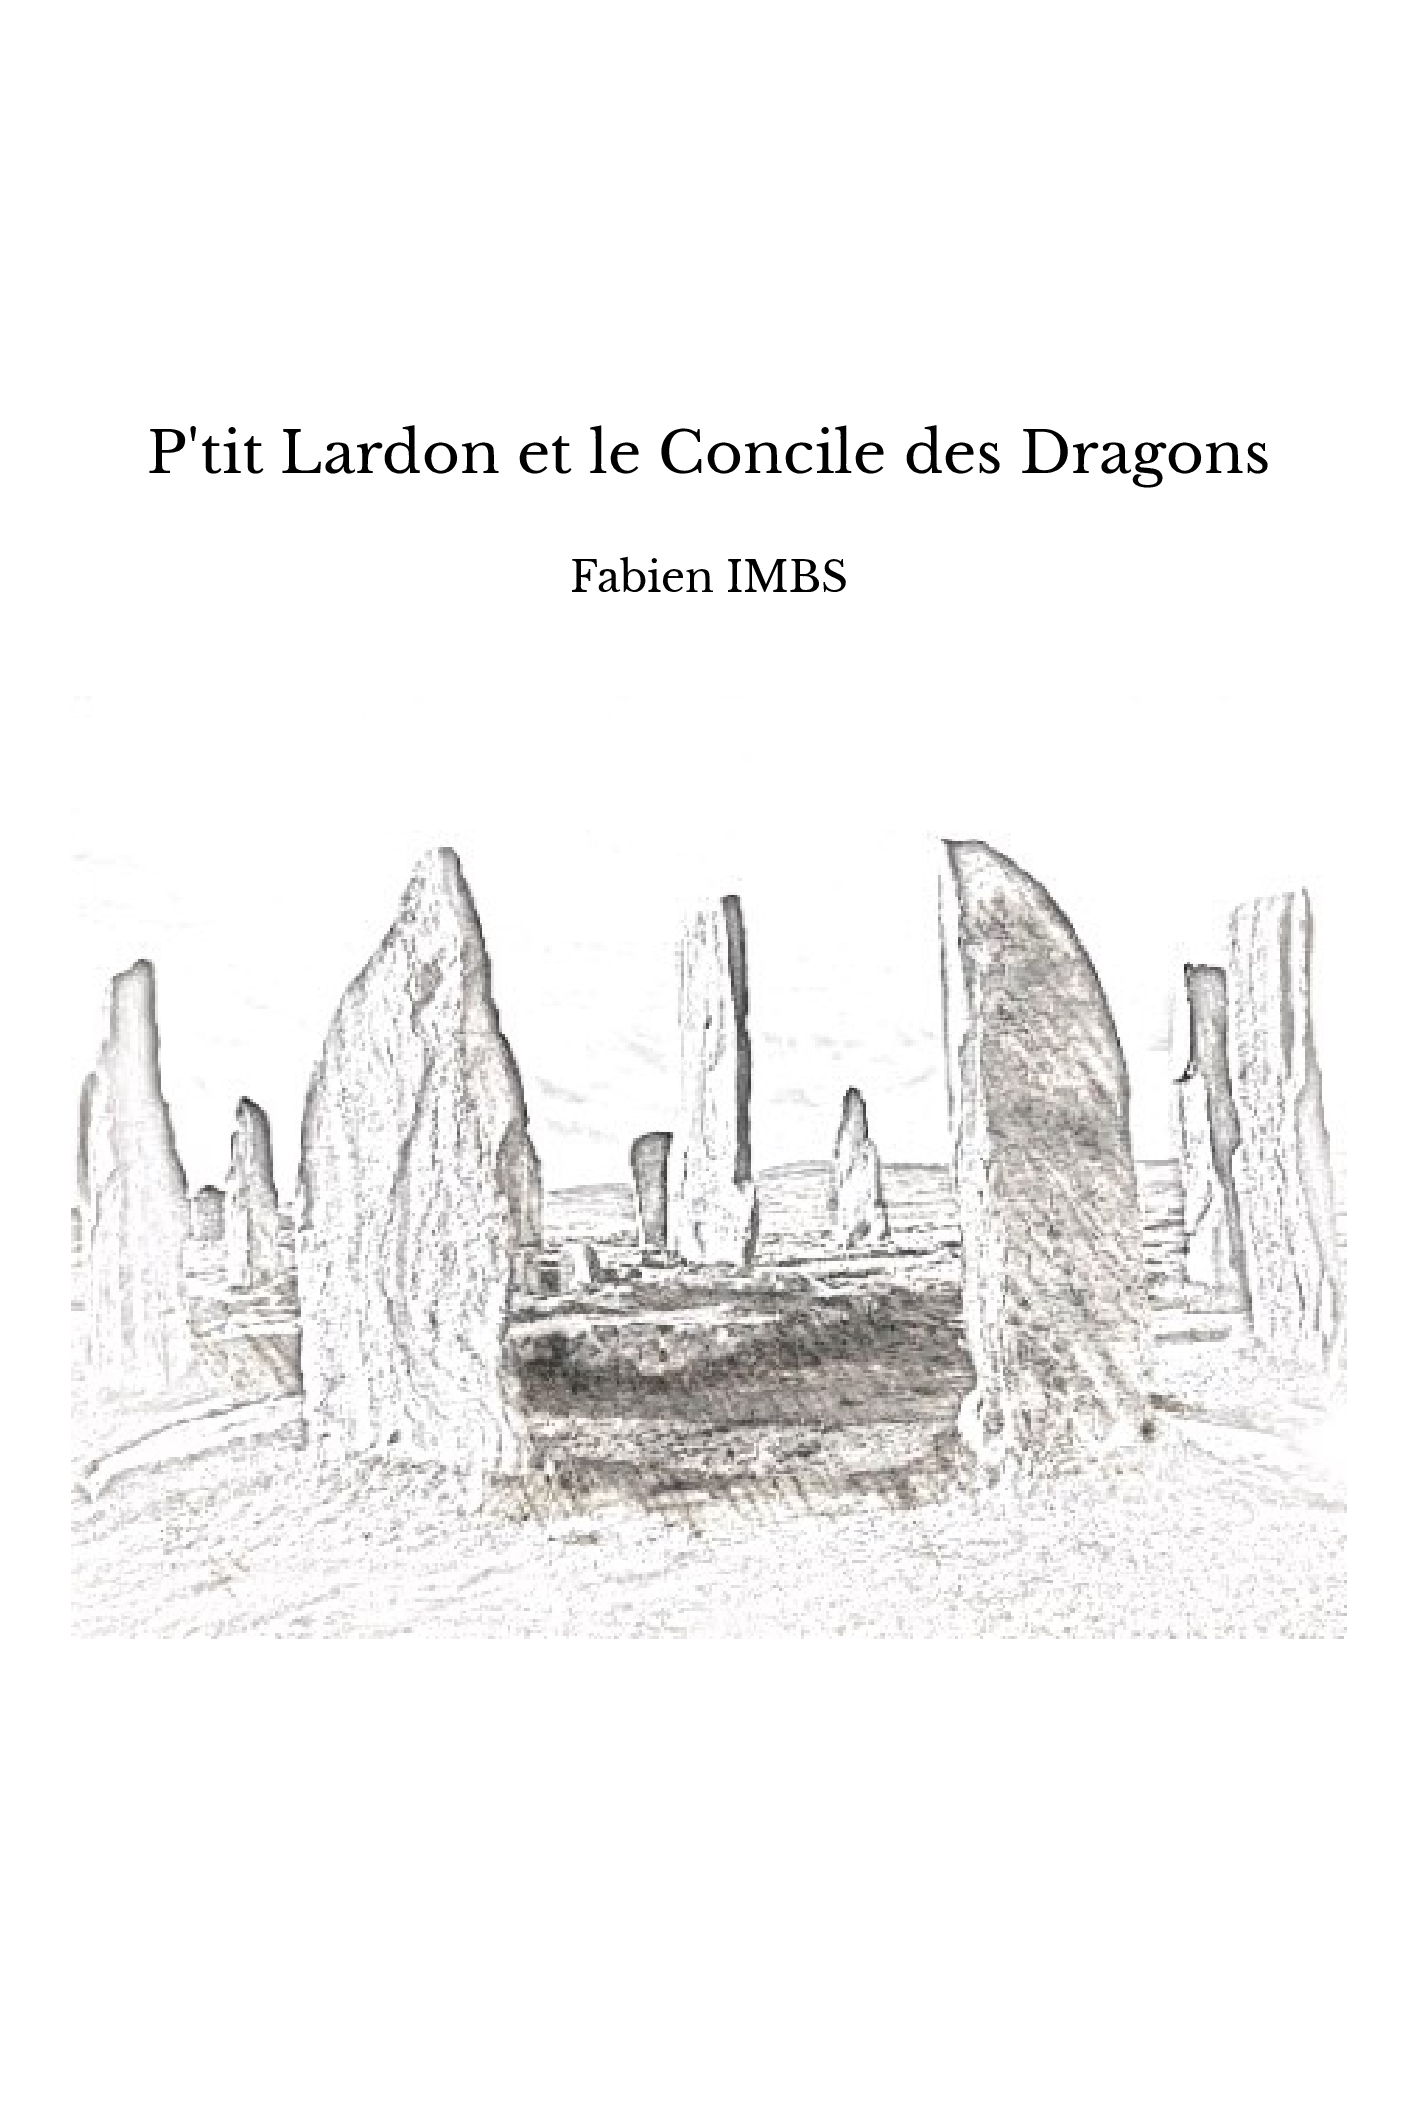 P'tit Lardon et le Concile des Dragons